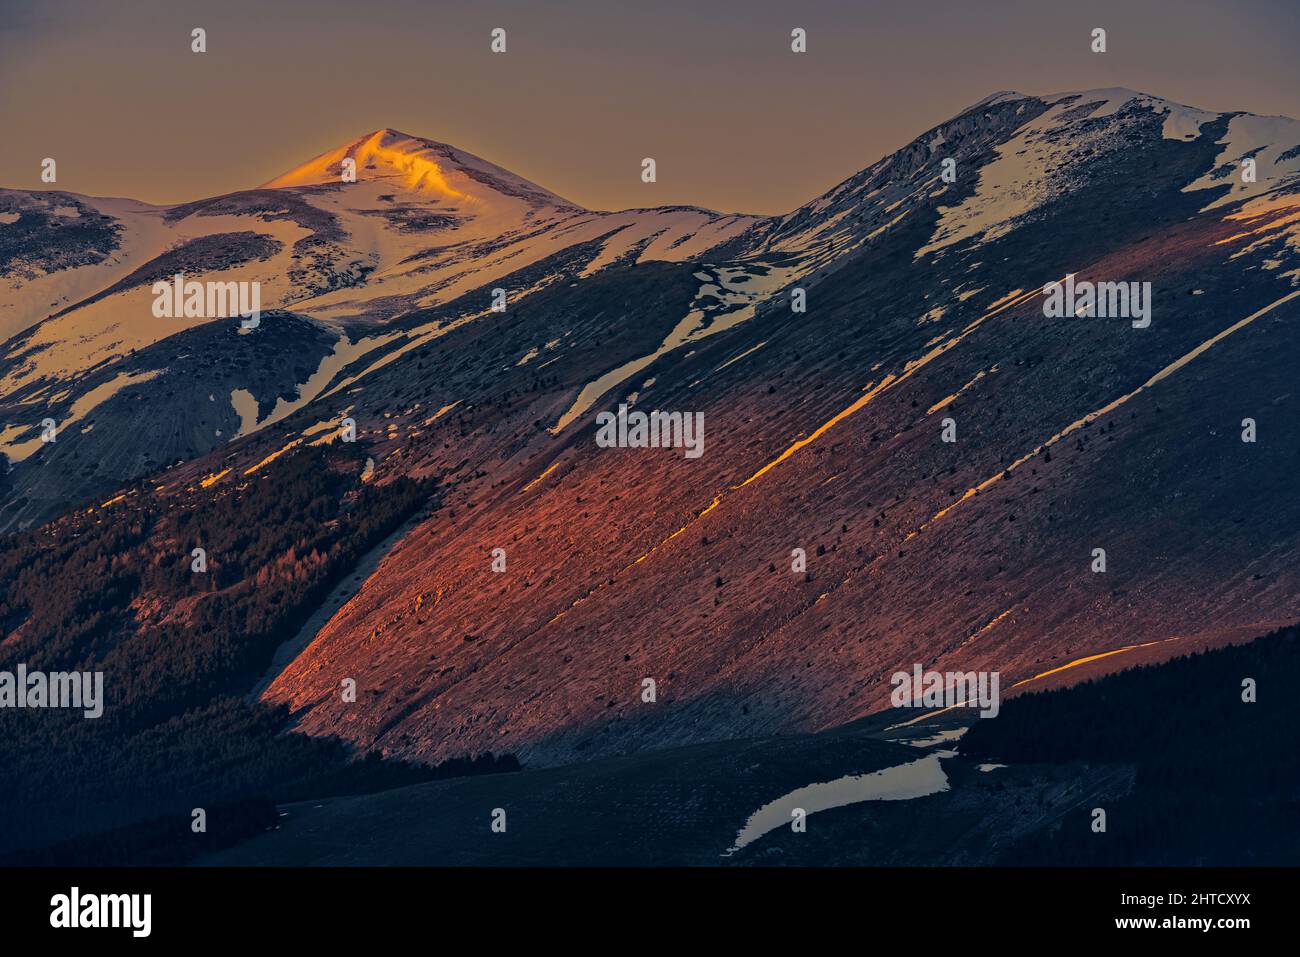 Des lumières dorées au coucher du soleil sur les sommets enneigés des montagnes des Abruzzes. Ciel nuageux. Roccaraso, province de l'Aquila, Abruzzes, Italie, Europe Banque D'Images